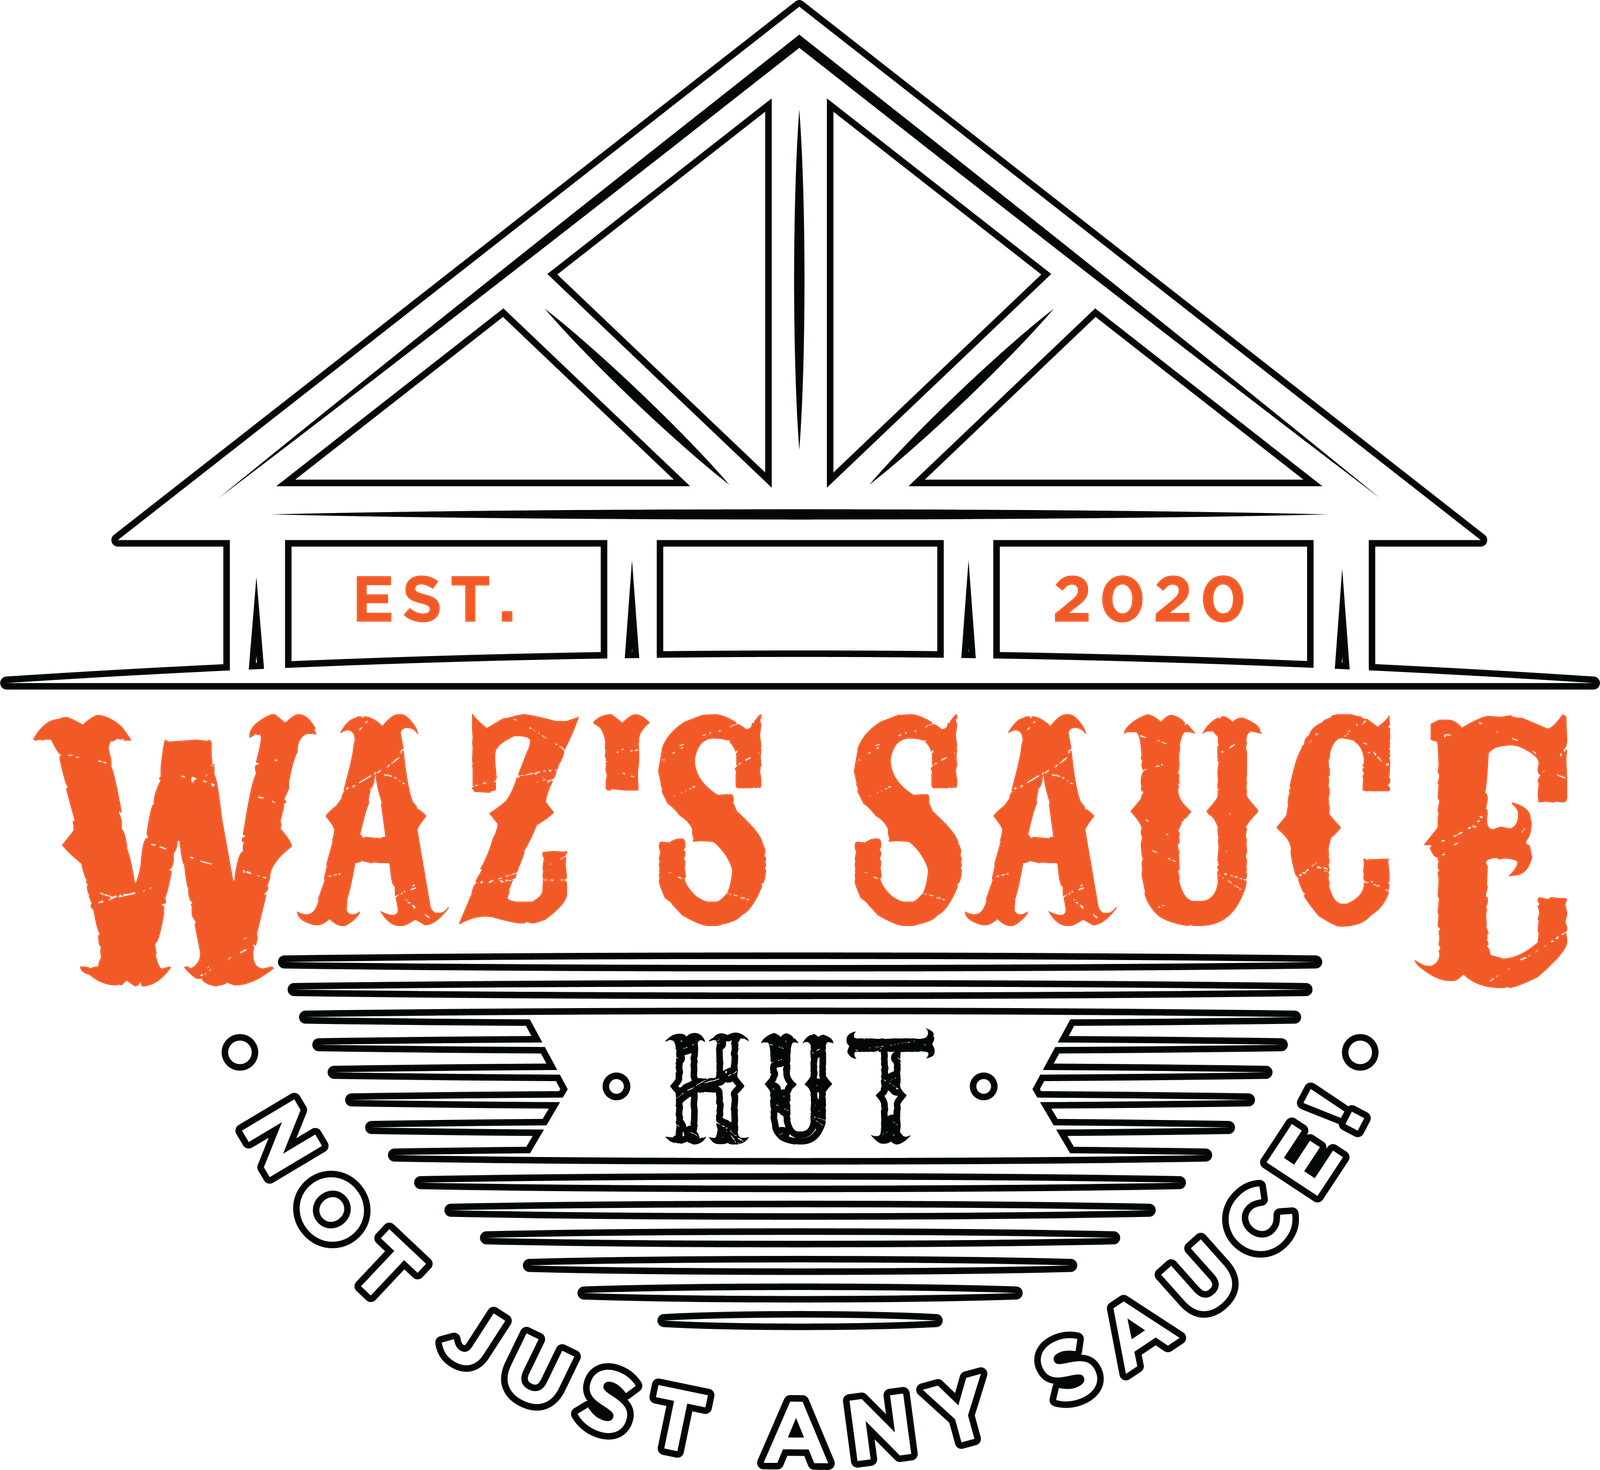 Waz's Sauce Hut